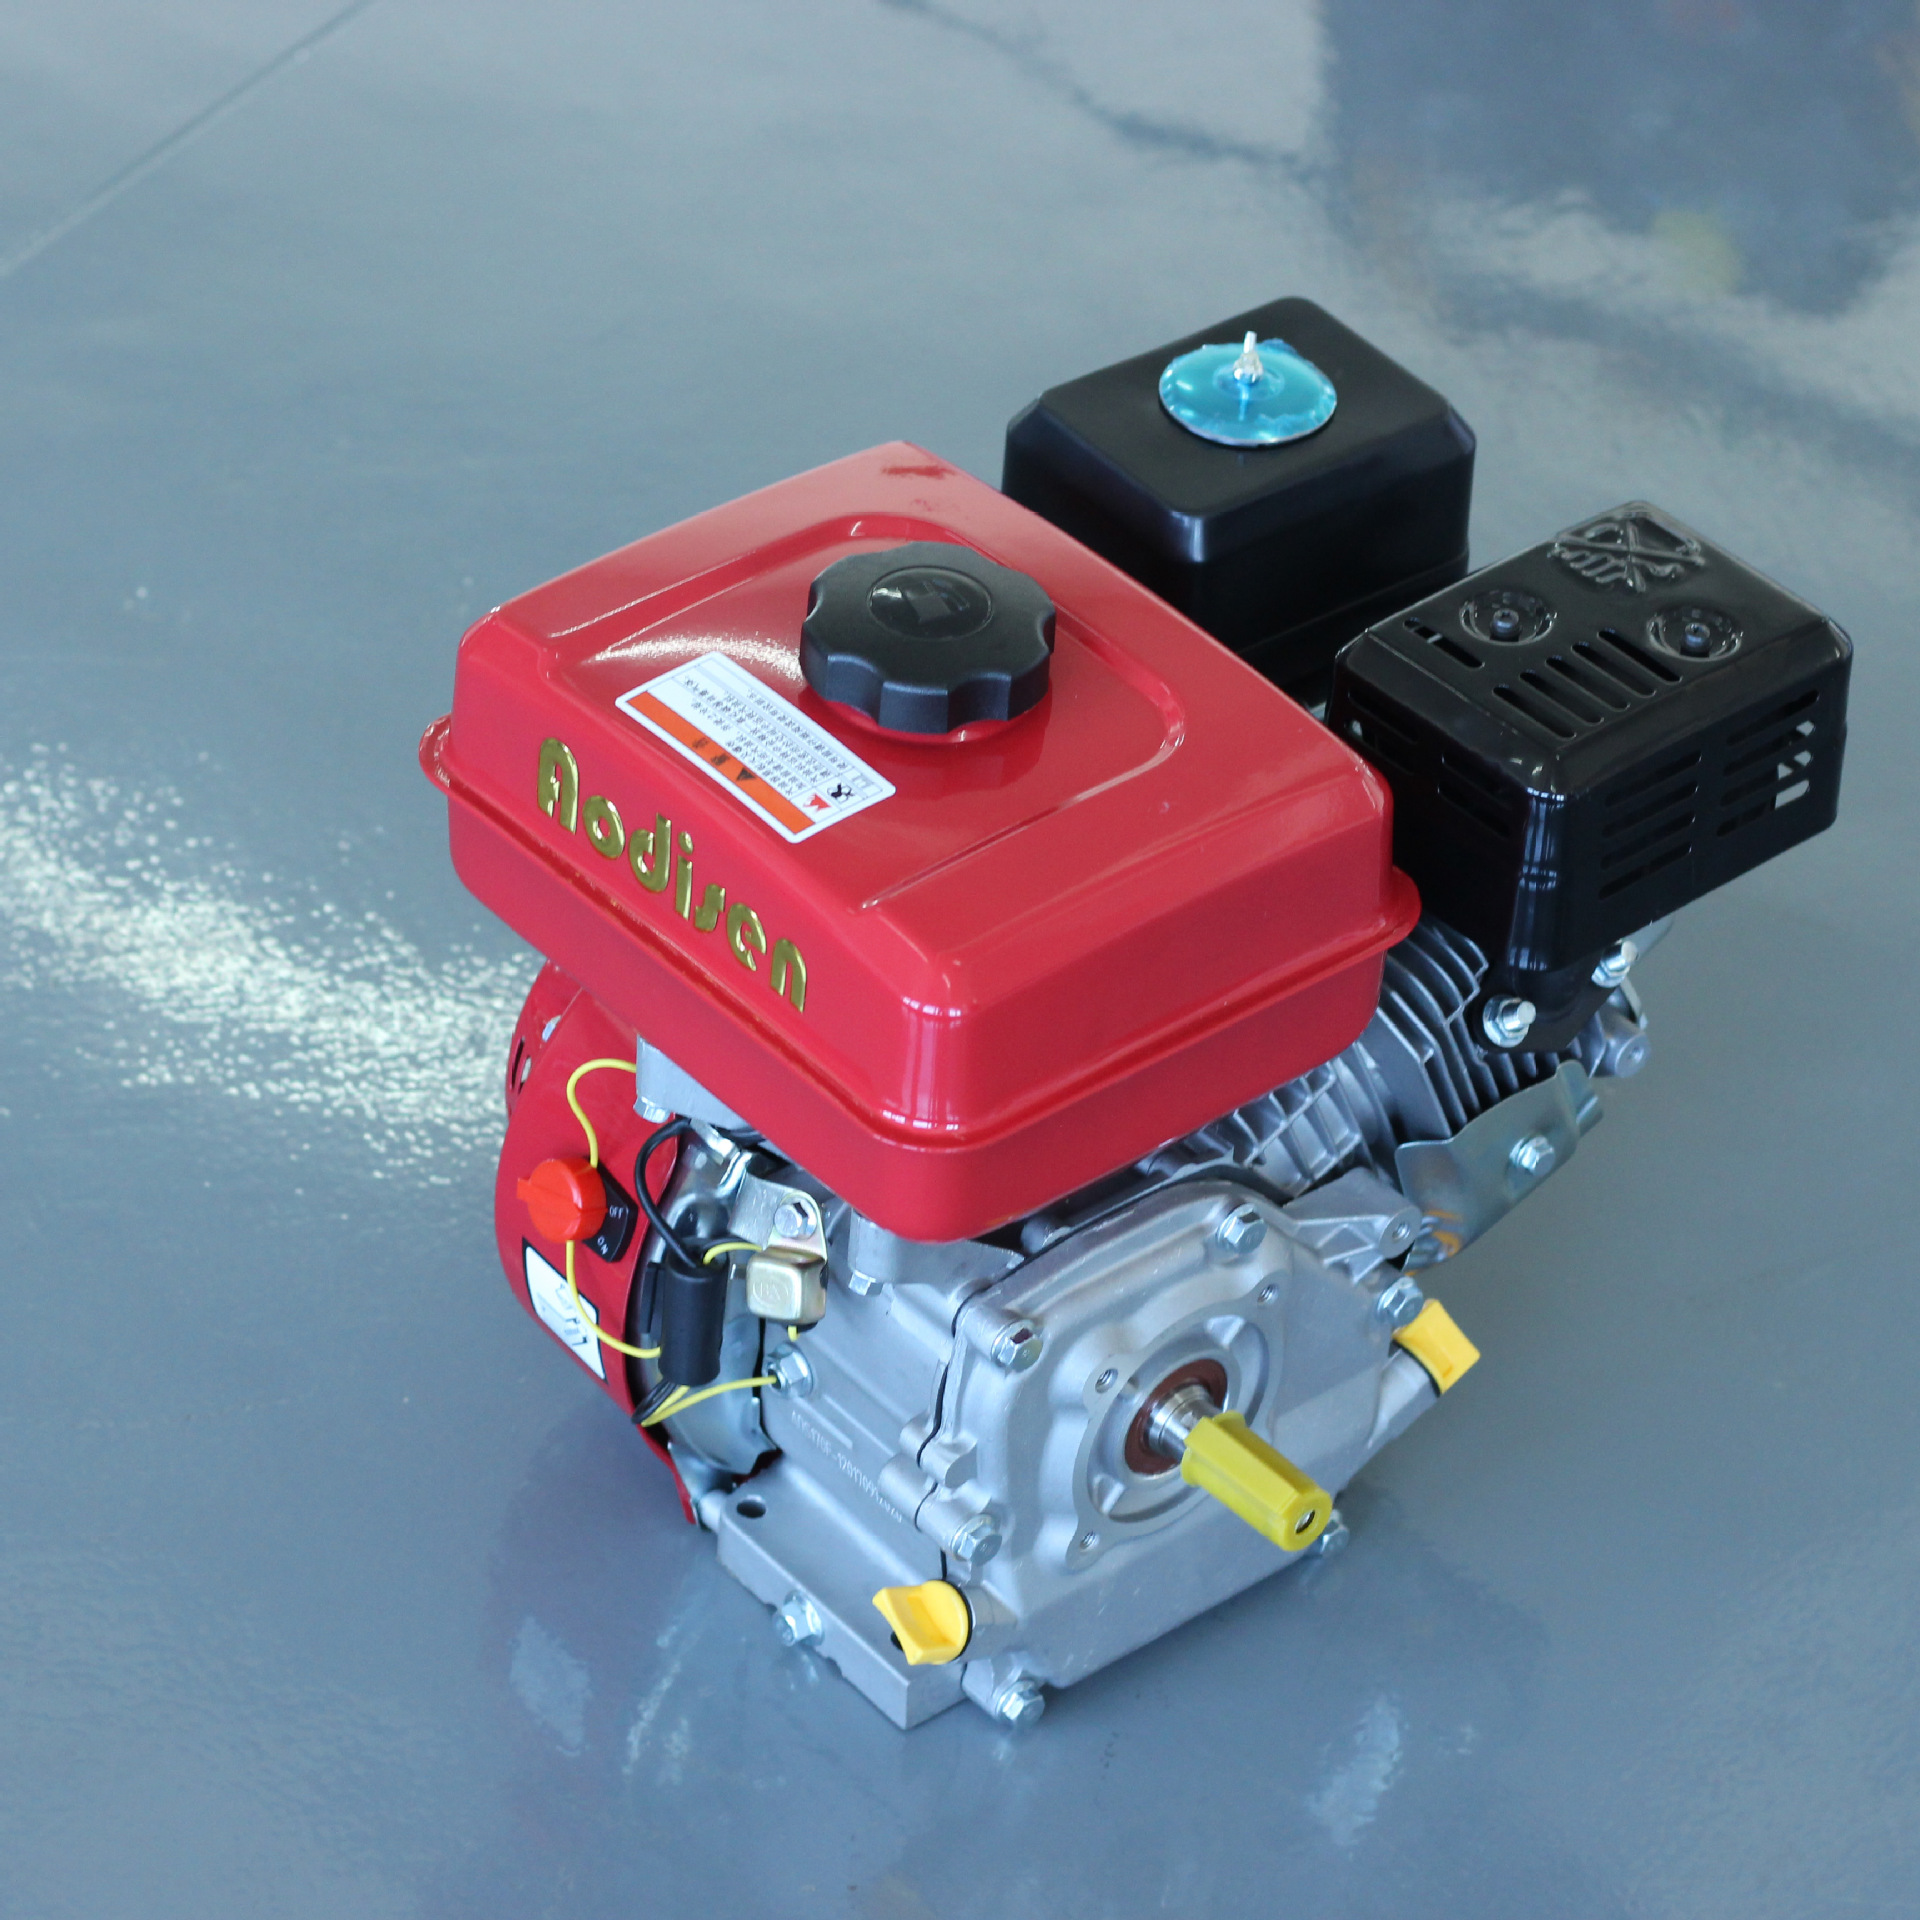 Motore a combustione interna Gruppo 170F motore a benzina motore a quattro tempi vento freddo 7.5HP processore GX210